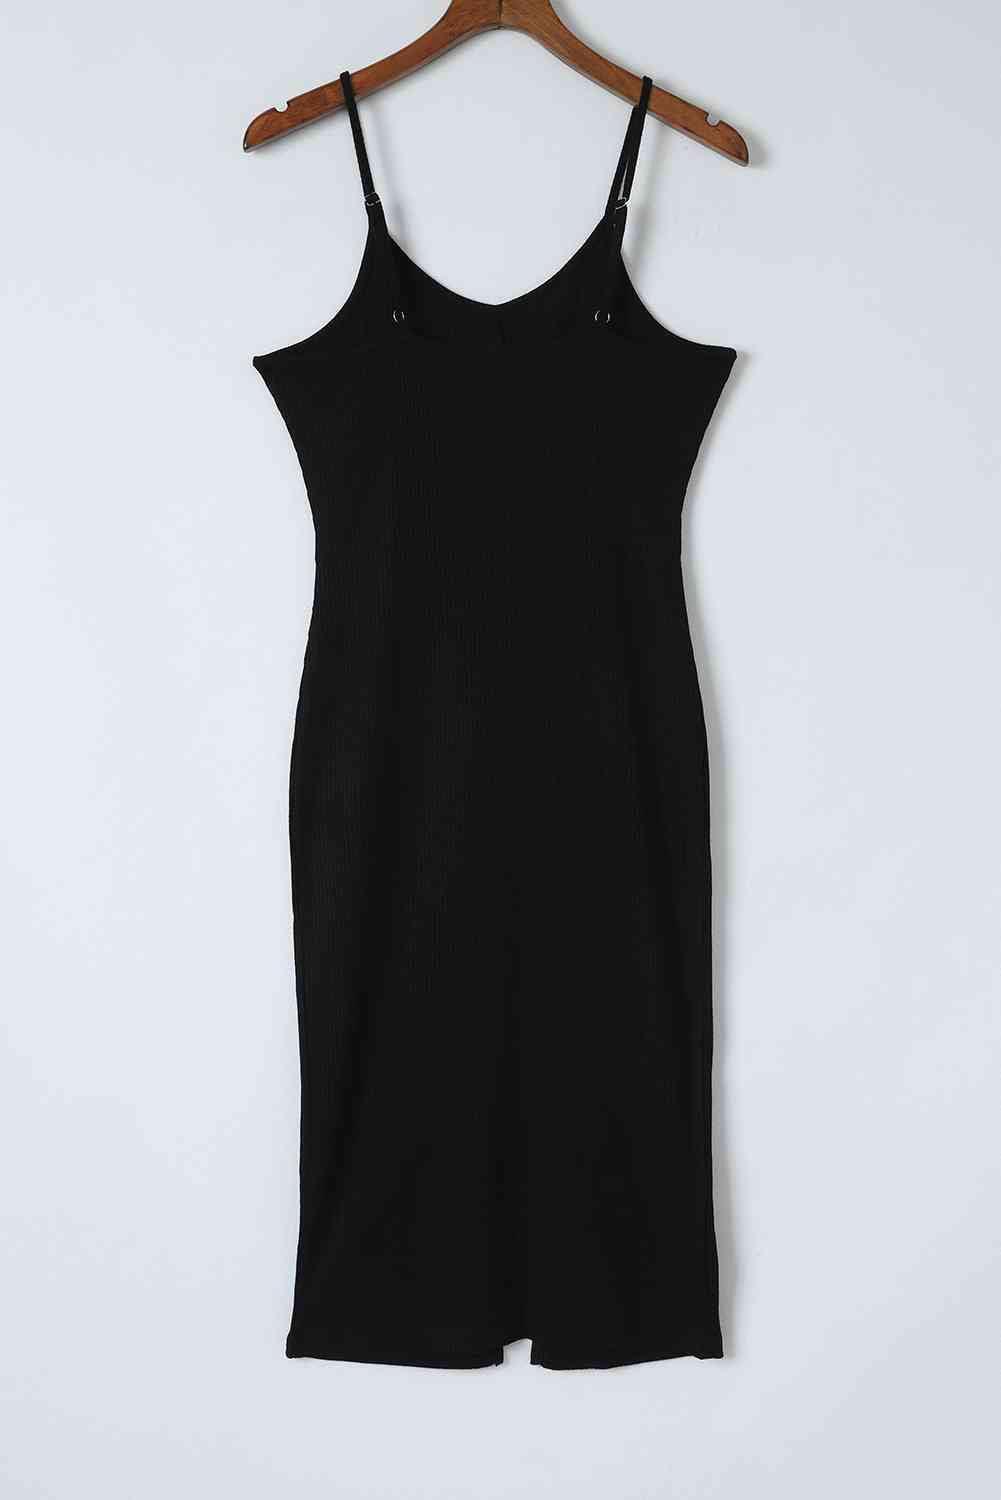 Bona Fide Fashion - Decorative Button Slit Midi Dress - Women Fashion - Bona Fide Fashion